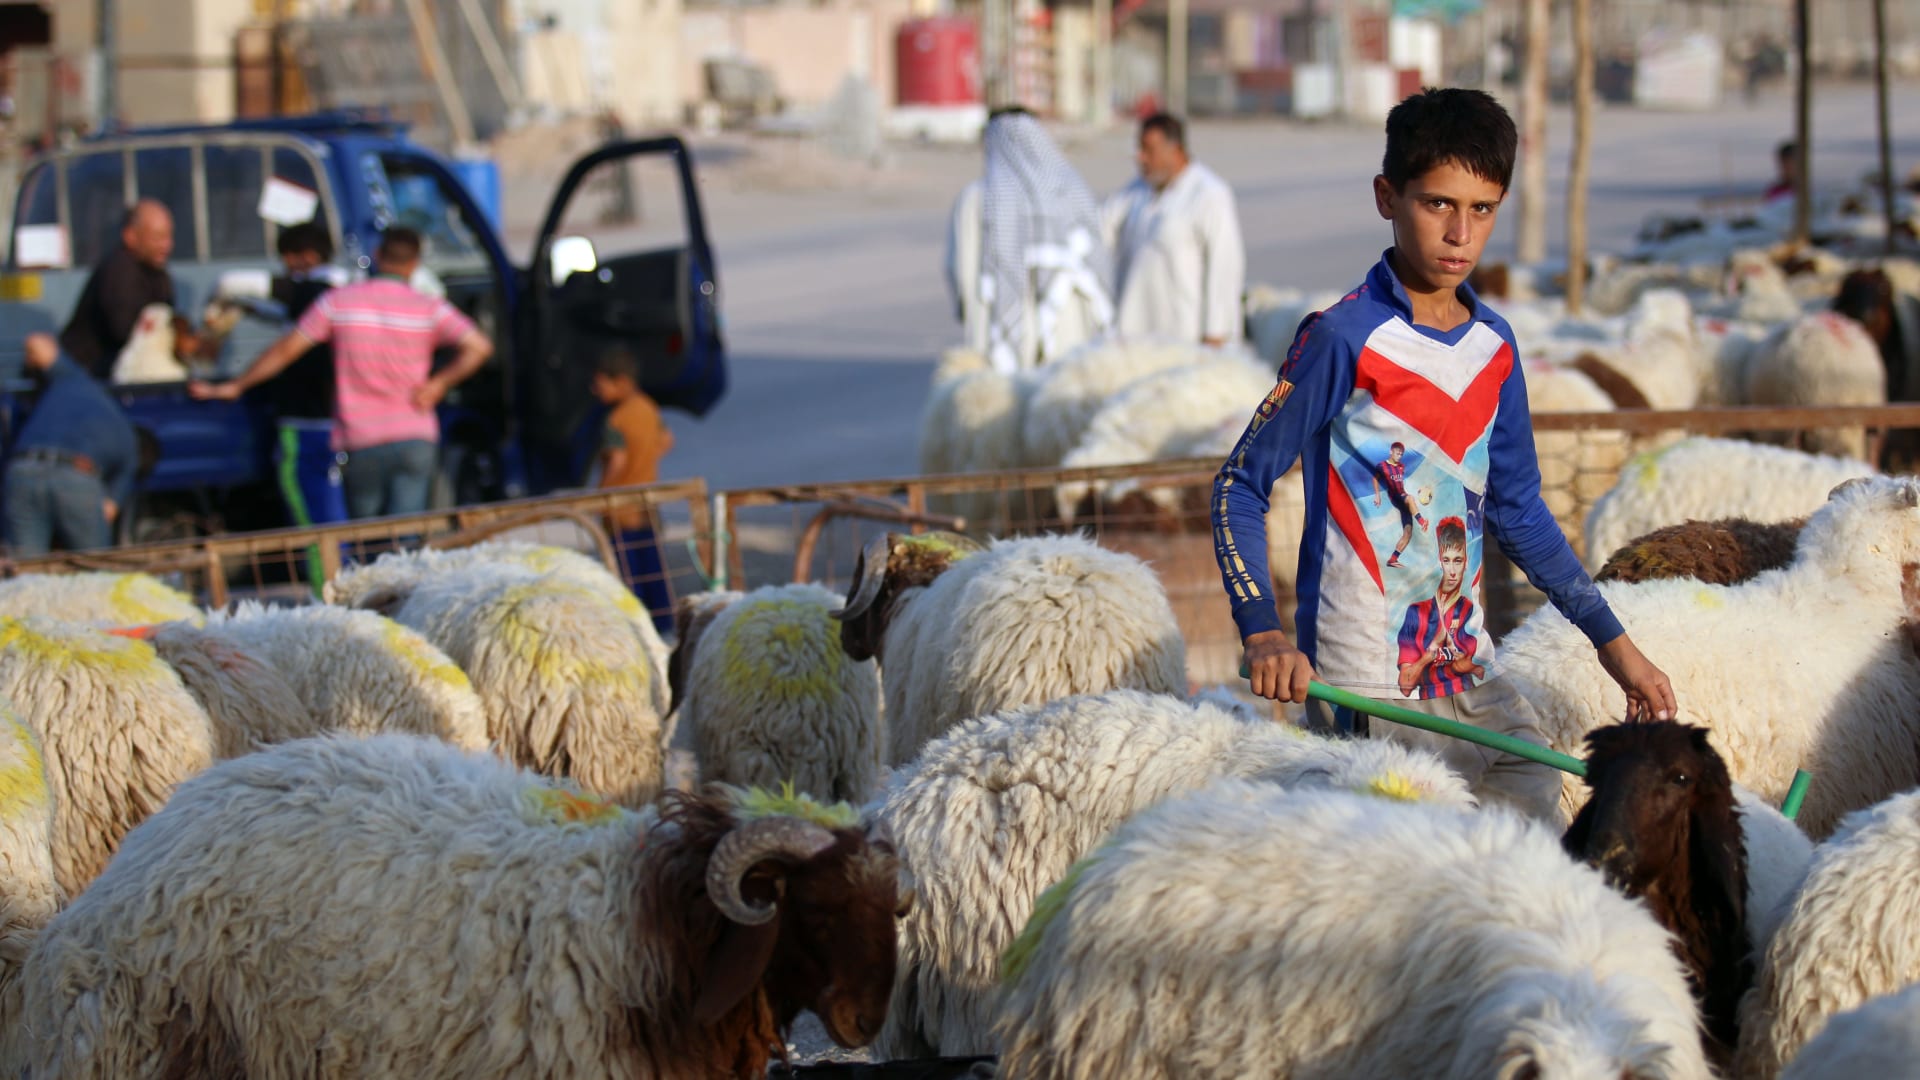 صبي عراقي يقف وسط مجموعة من الخراف في سوق للمواشي بمدينة البصرة العراقية